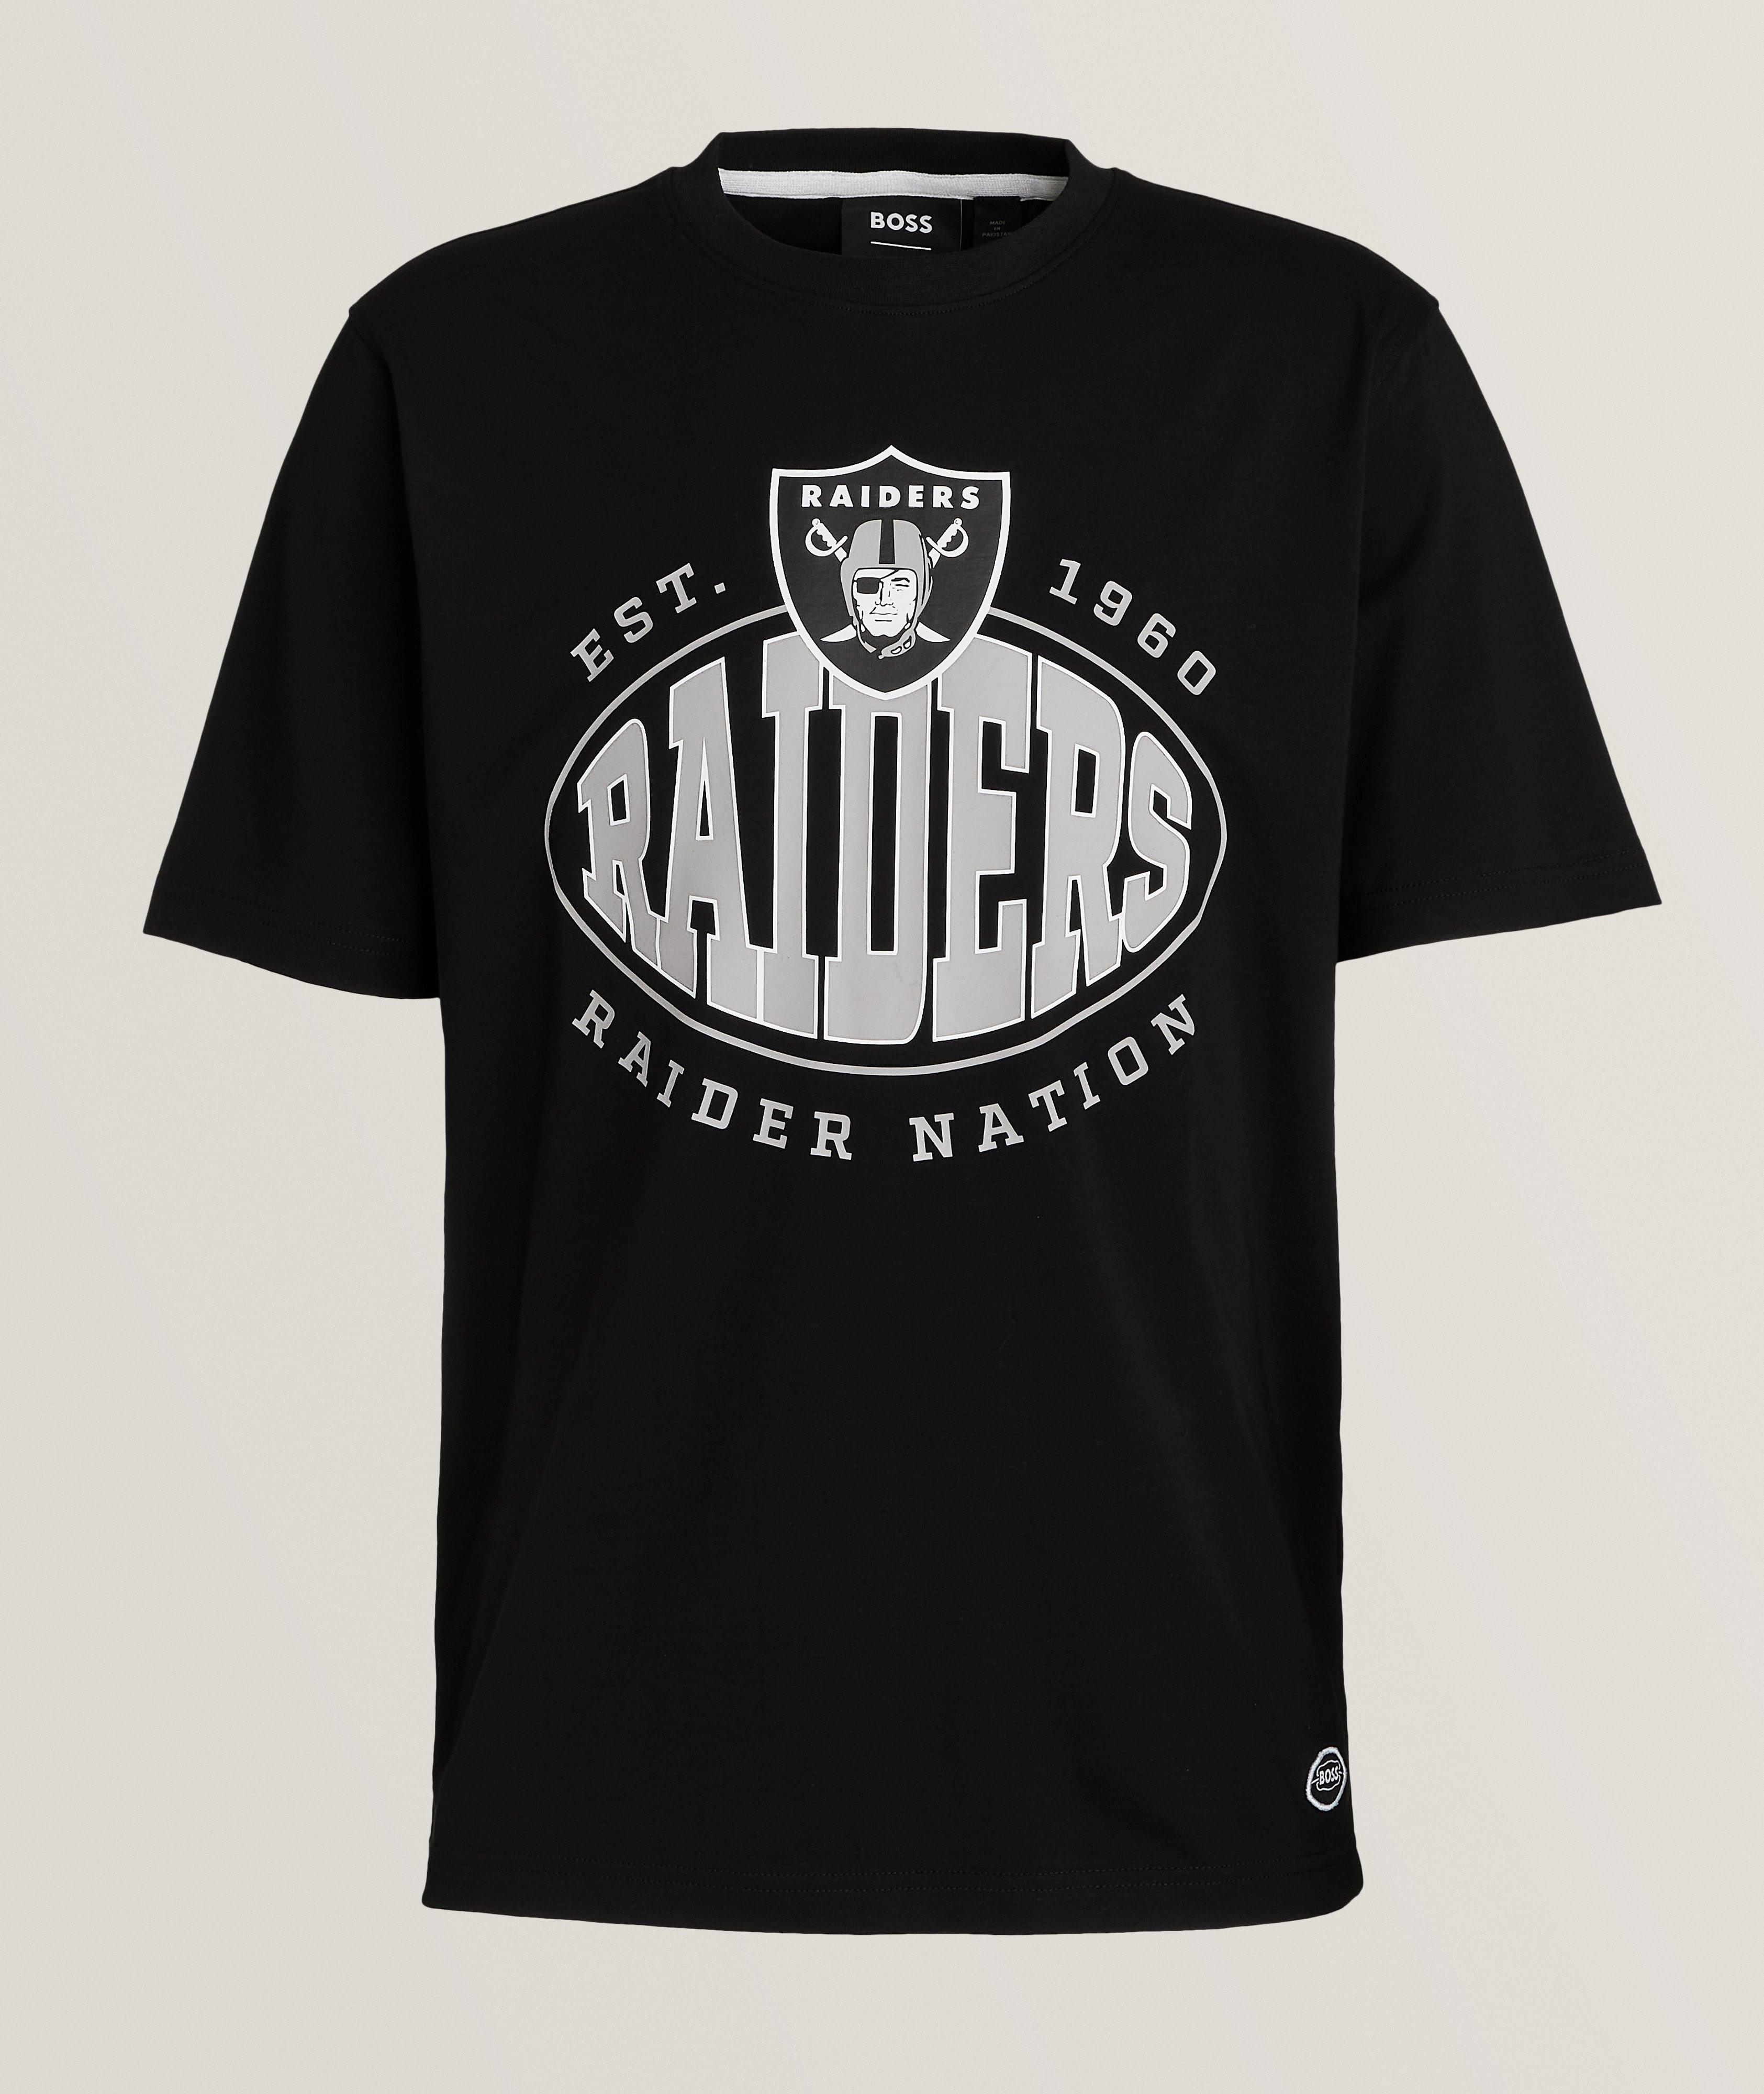 T-shirt en coton extensible, collection NFL image 0